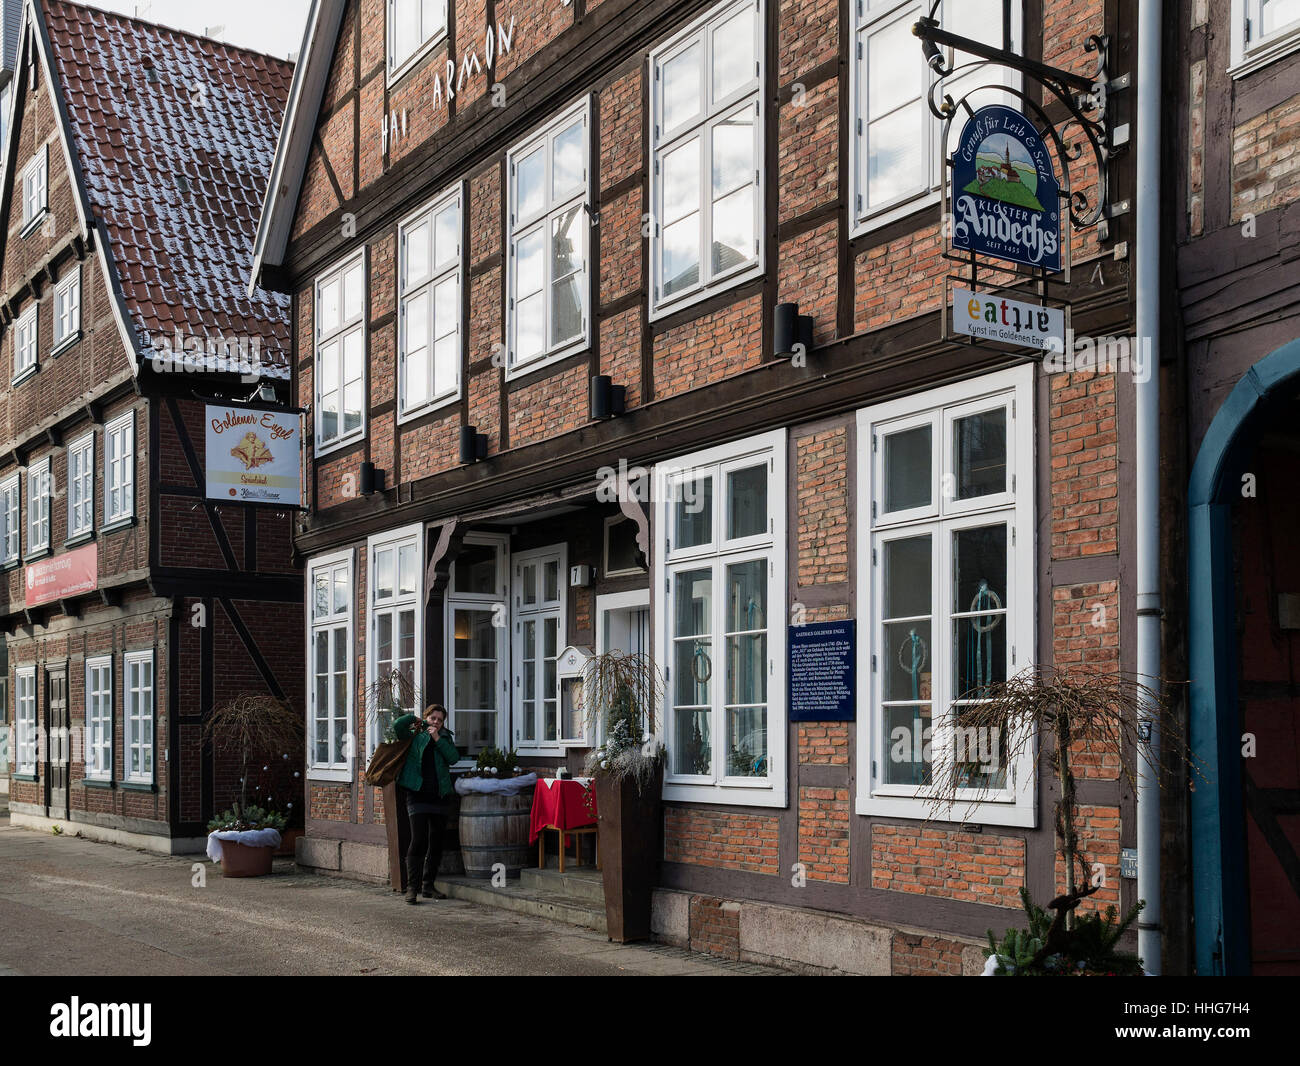 Maisons à colombages et inn Goldner Engel, Harburger Schloßstra0e, Hambourg-harburg Allemagne Europe Banque D'Images